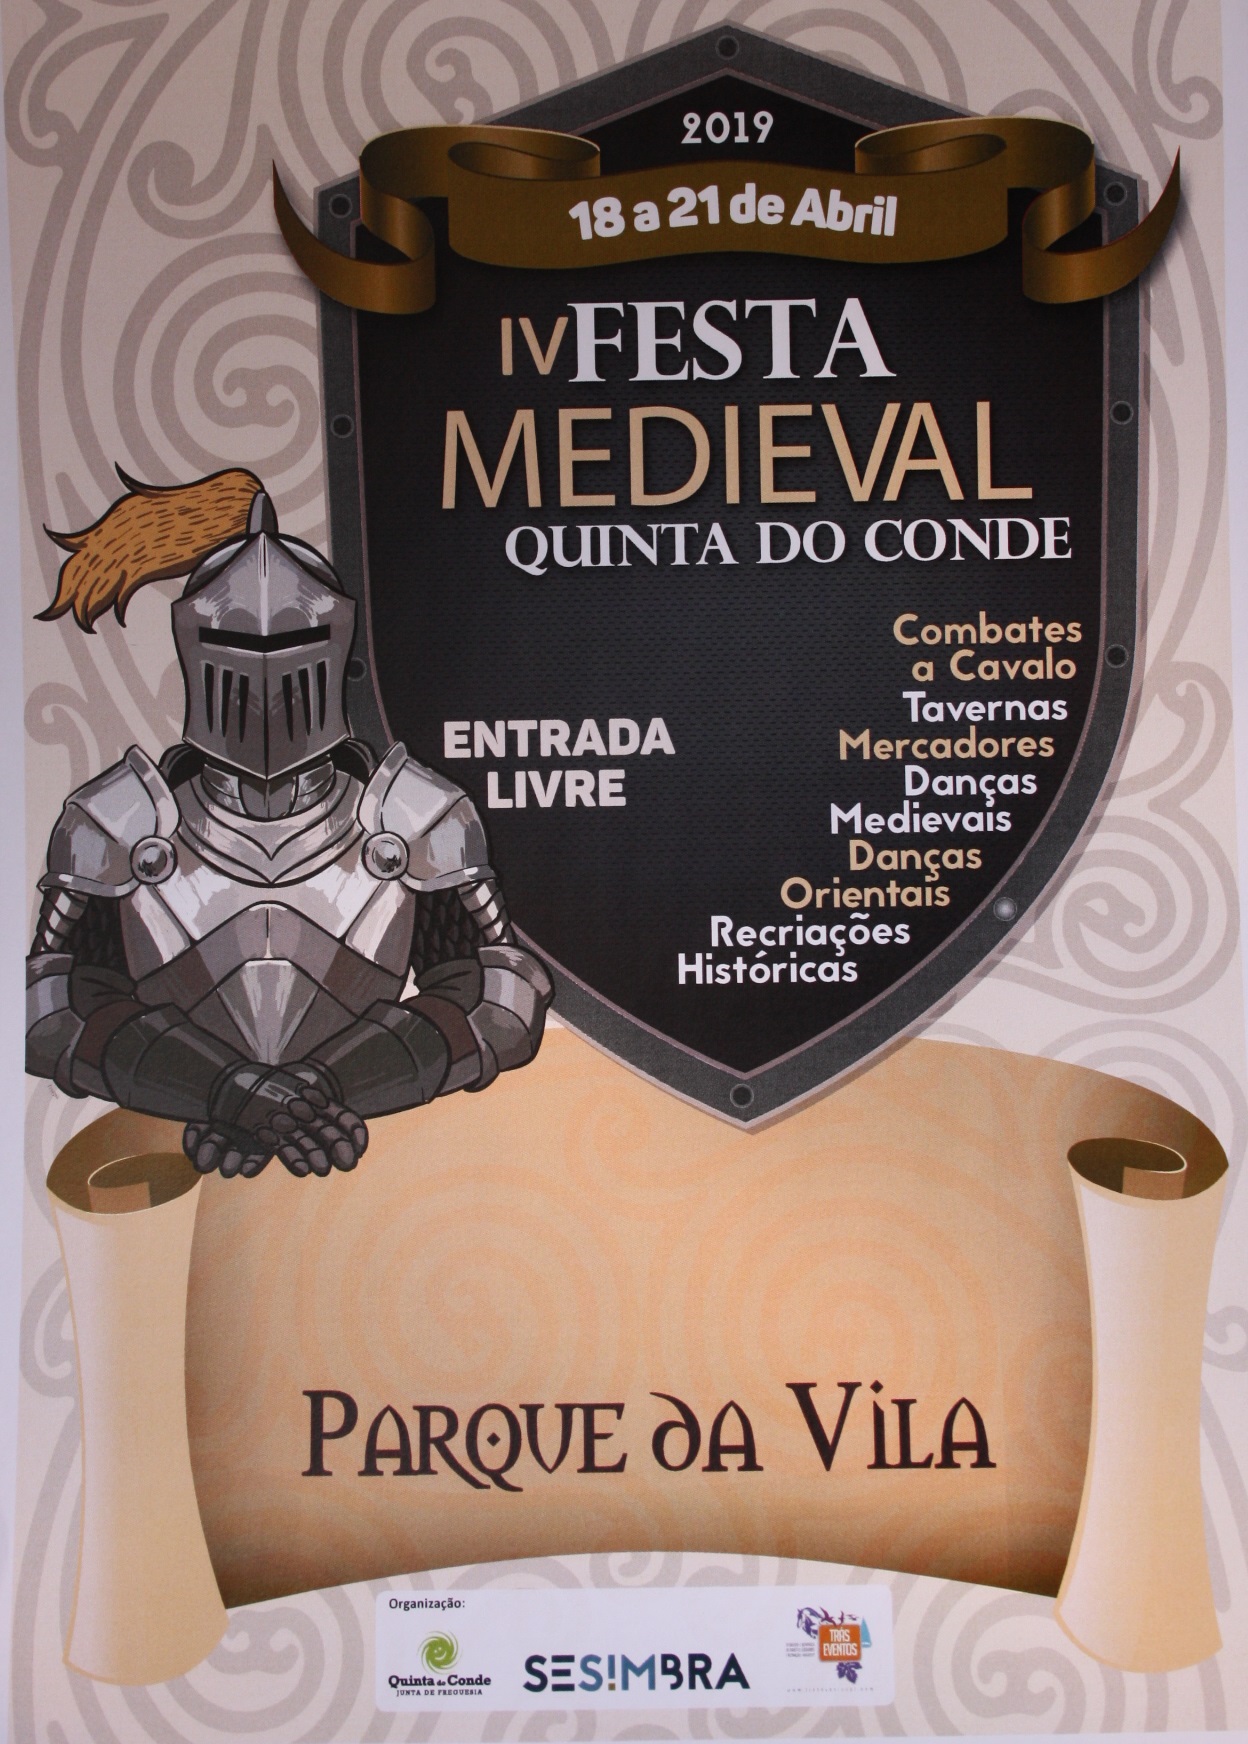 Festa Medieval Quinta do conde Sesimbra em Abril